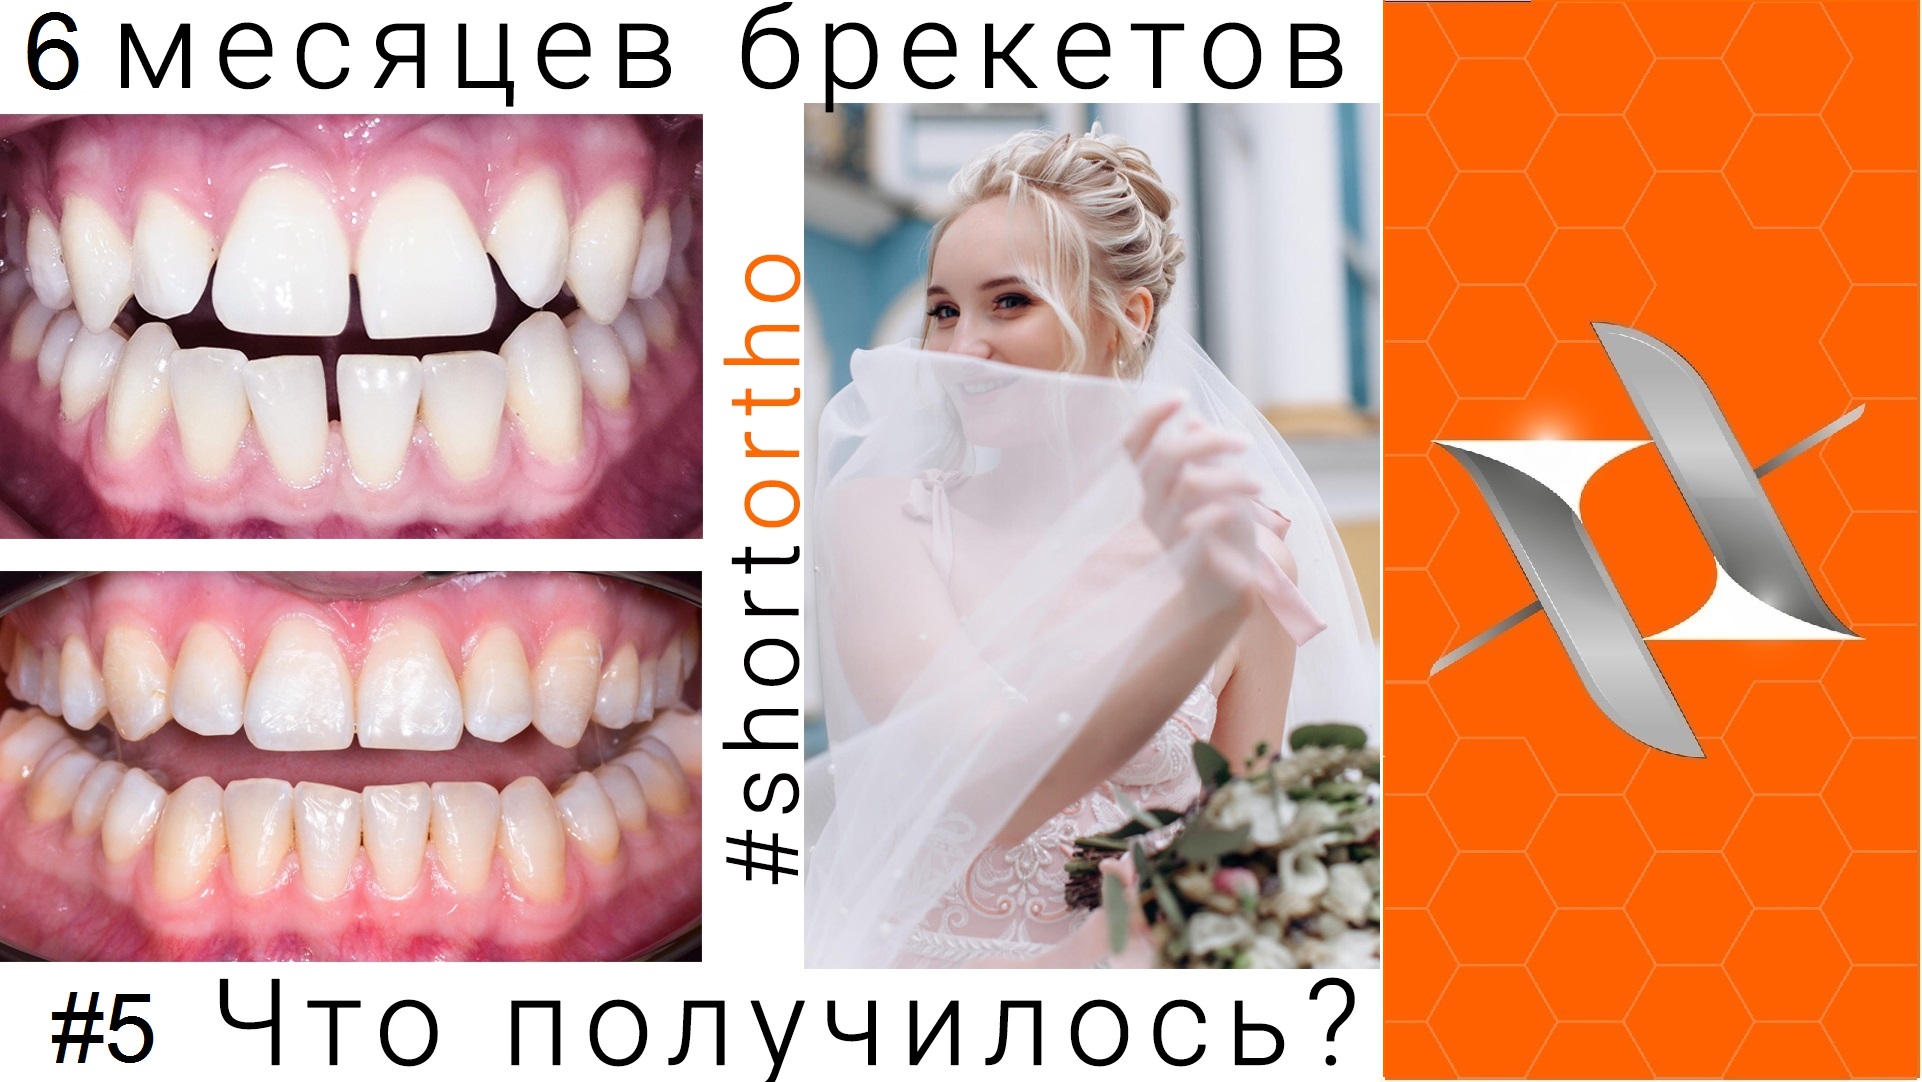 Ортодонтическое лечение на брекетах за 6 месяцев!  (До и после).Выводы. #Shortortho